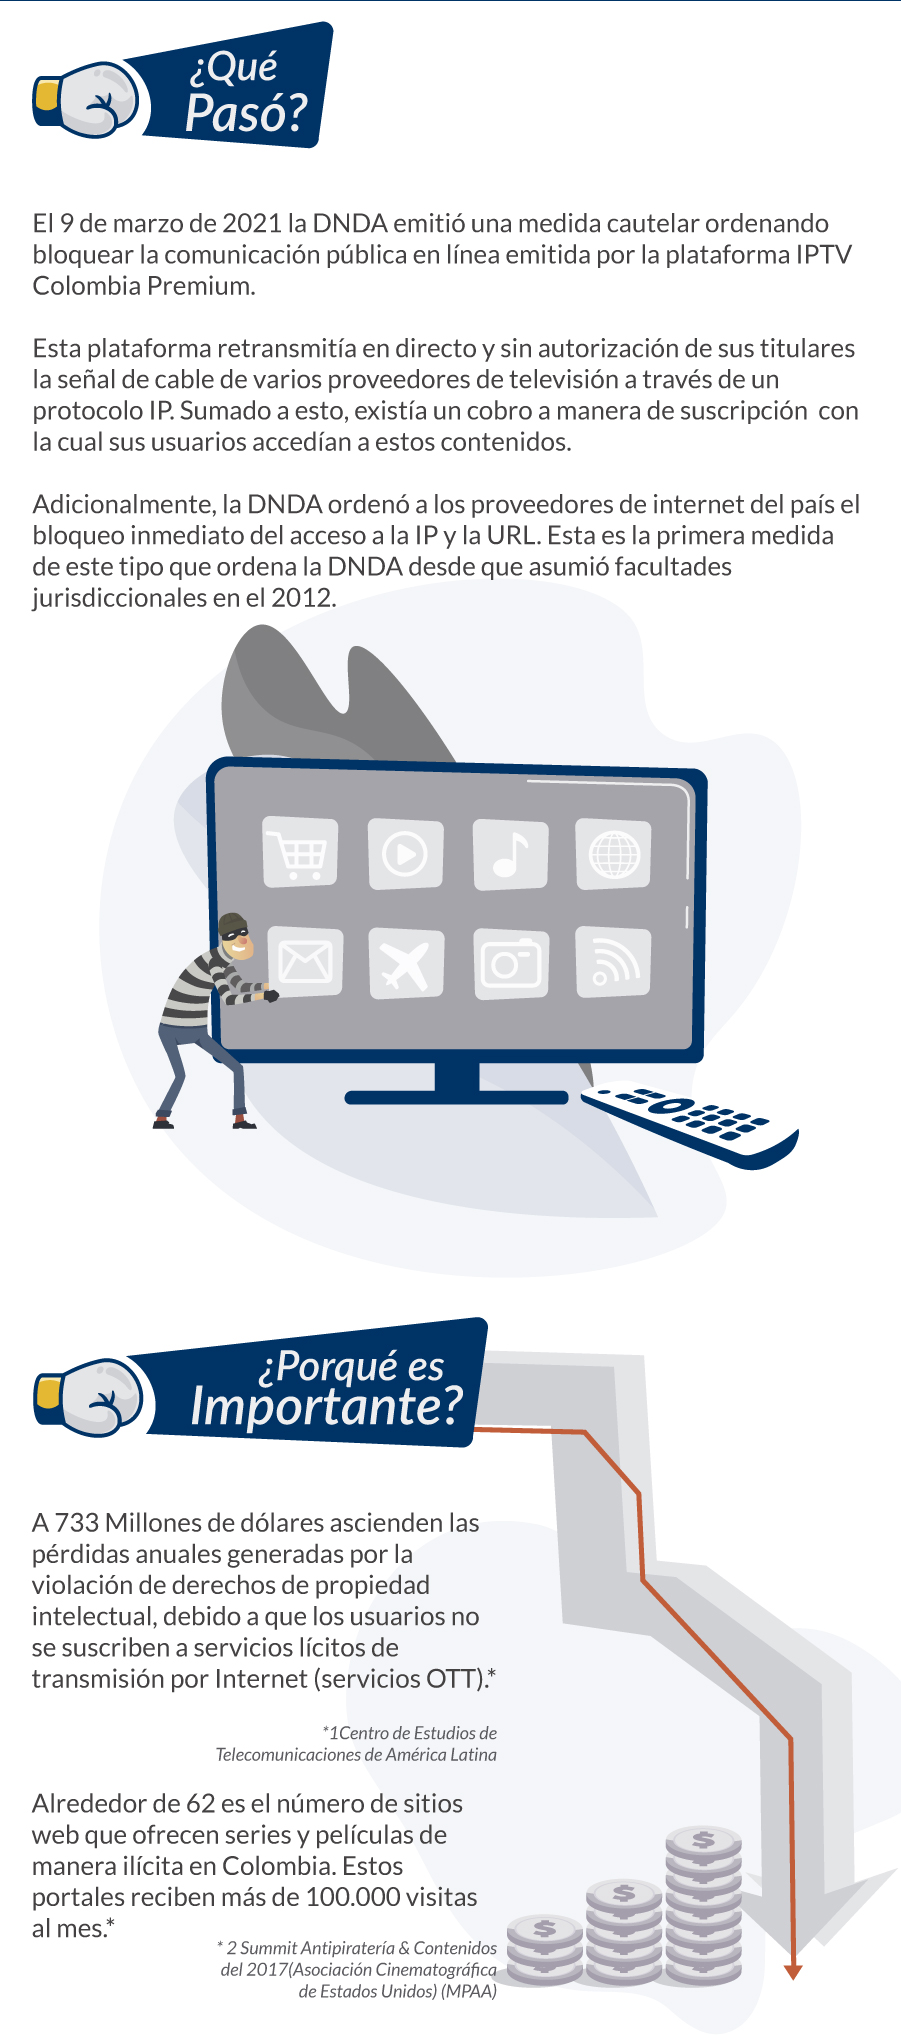 La DNDA emitió una medida cautelar para bloquear la comunicación pública emitida por la plataforma IPTV Colombia Premium.